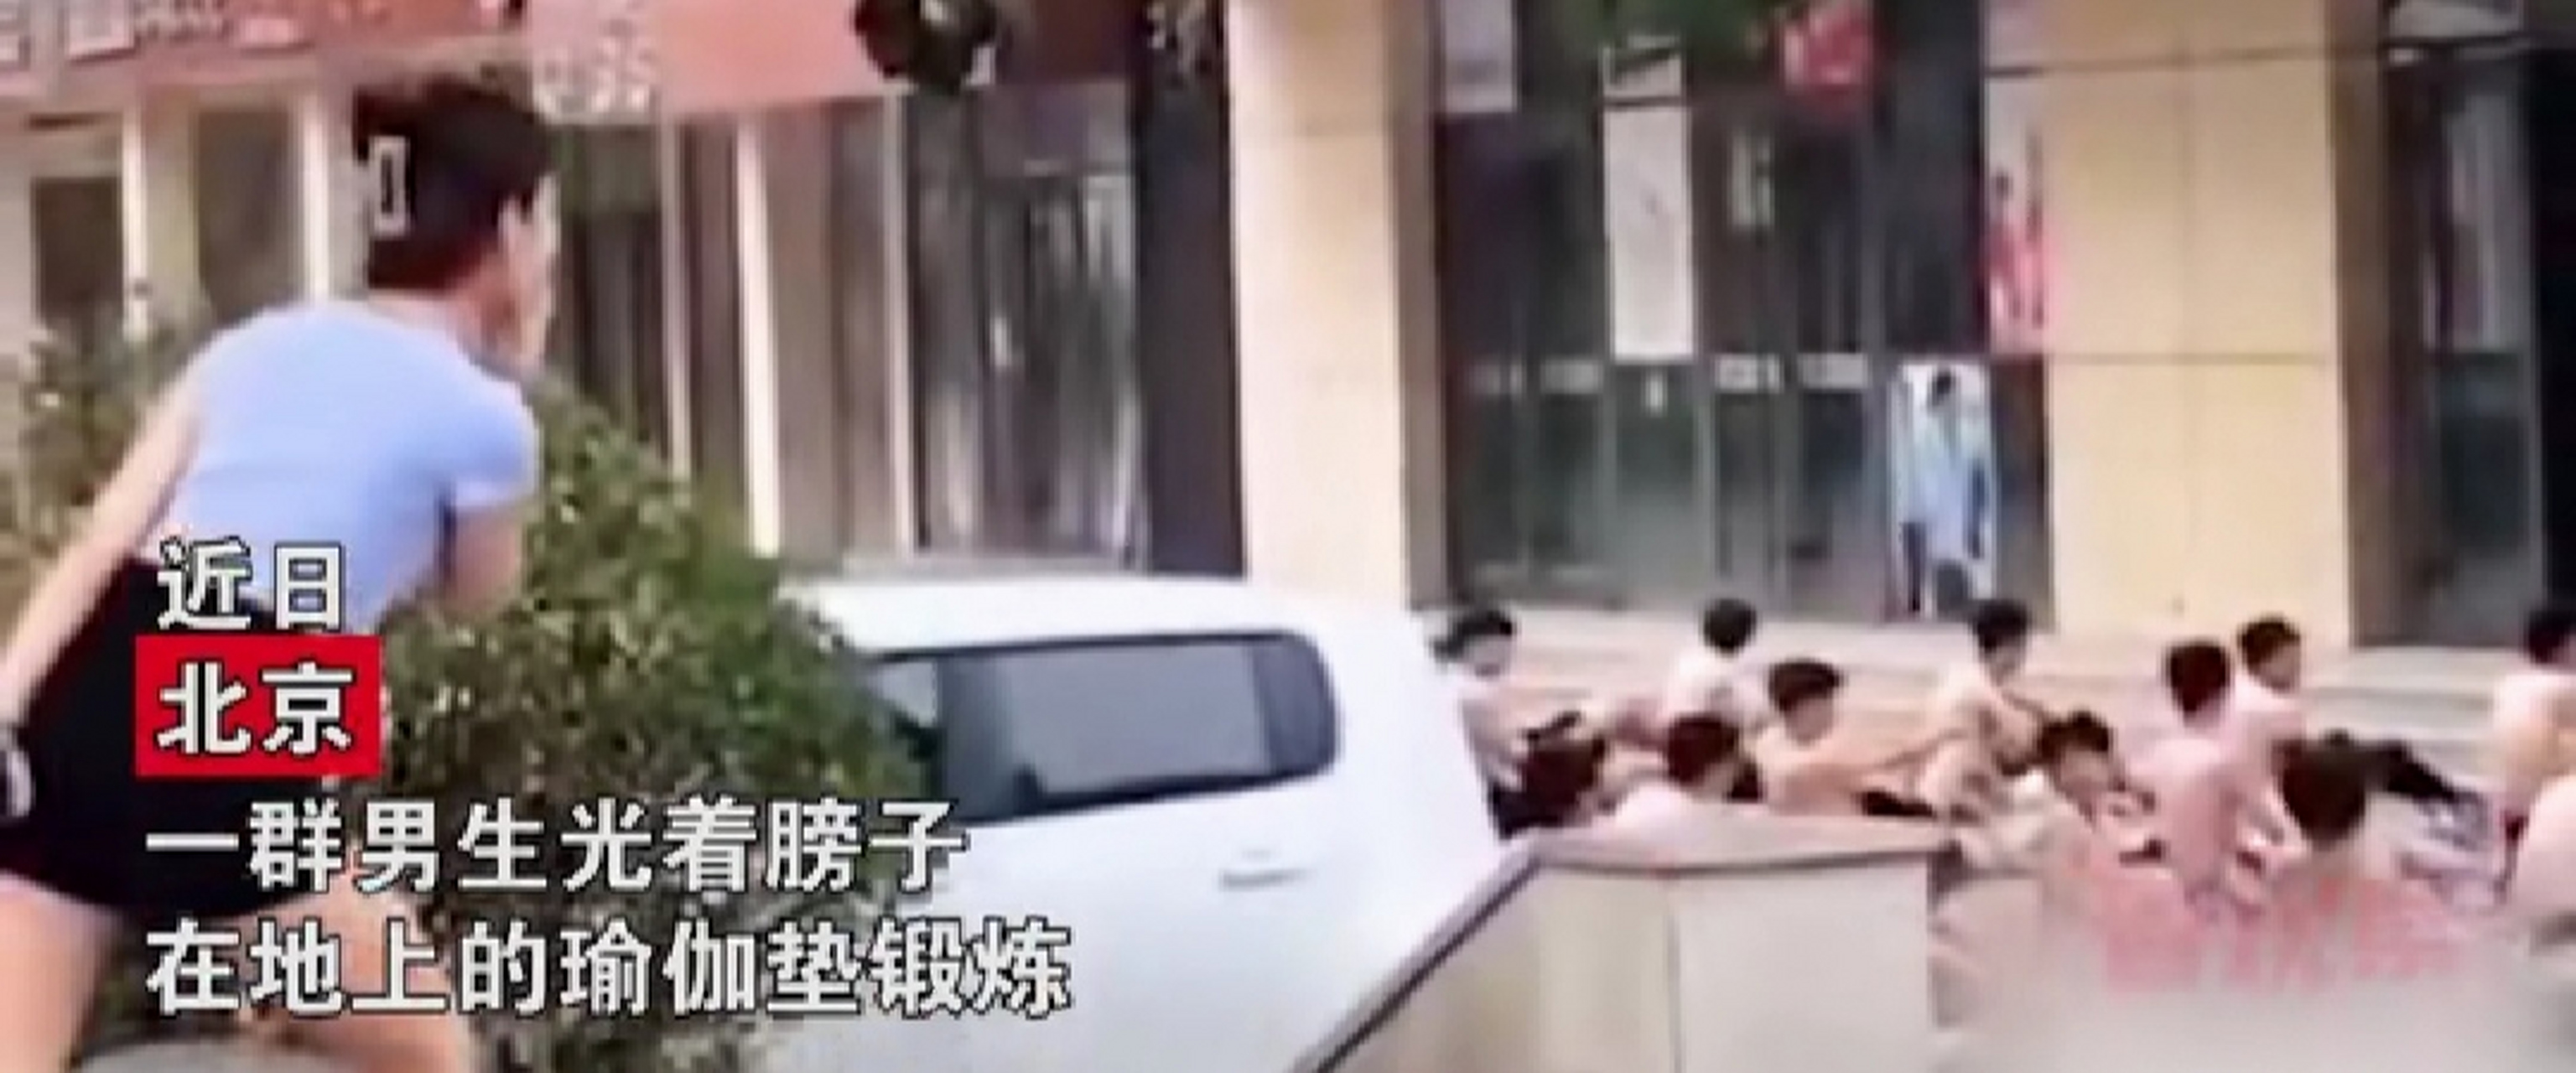 一群男生光膀子运动,一女生躲树后直勾勾地看  北京网友发布一则视频